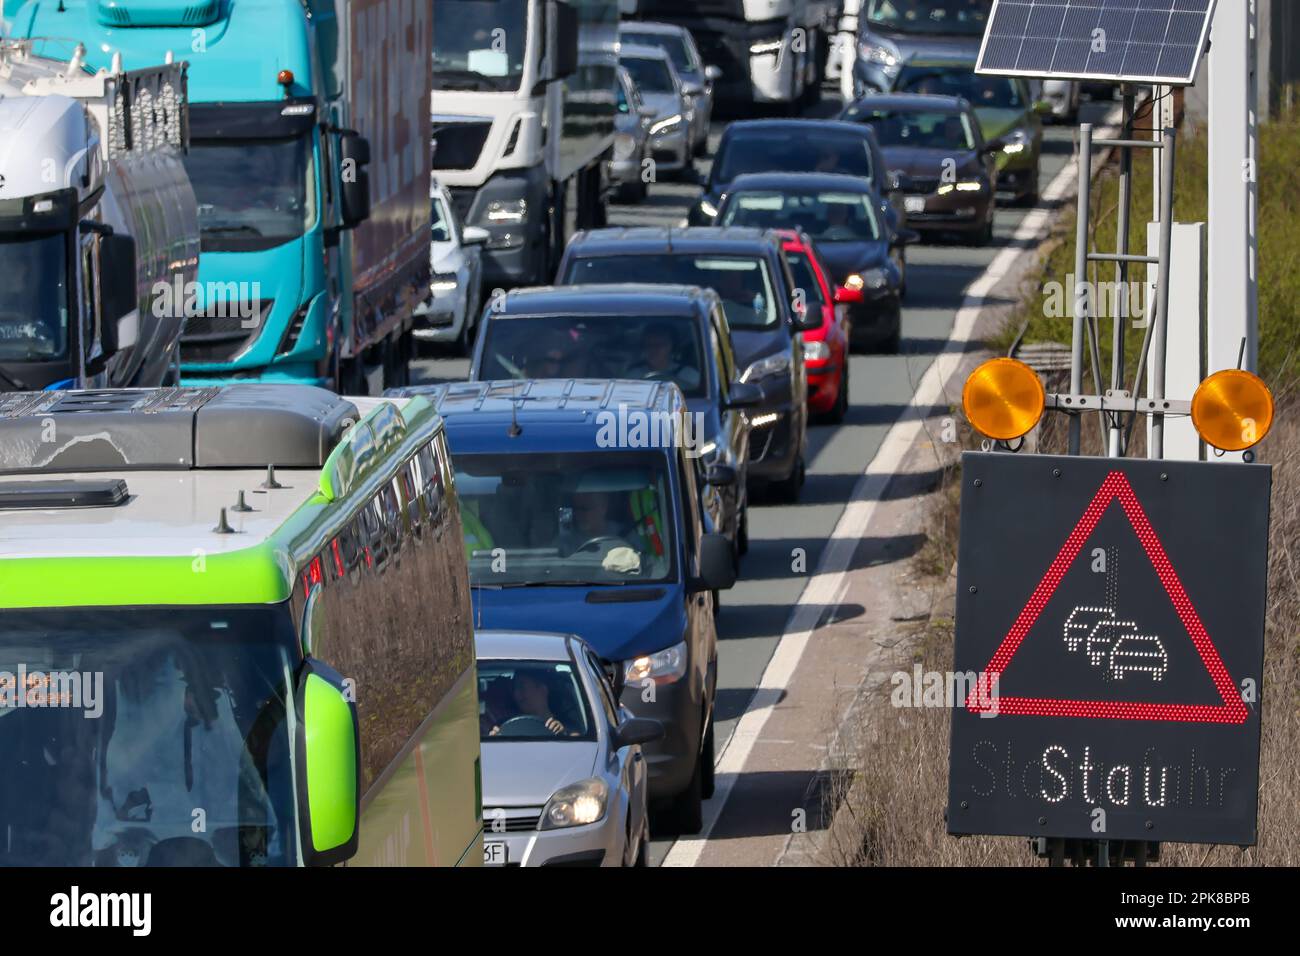 Oberhausen, Rhénanie-du-Nord-Westphalie, Allemagne - embouteillages sur l'autoroute A3, voyage de Pâques, voitures, fourgonnettes, camions, les caravanes et les campeurs sont coincés dans le train Banque D'Images